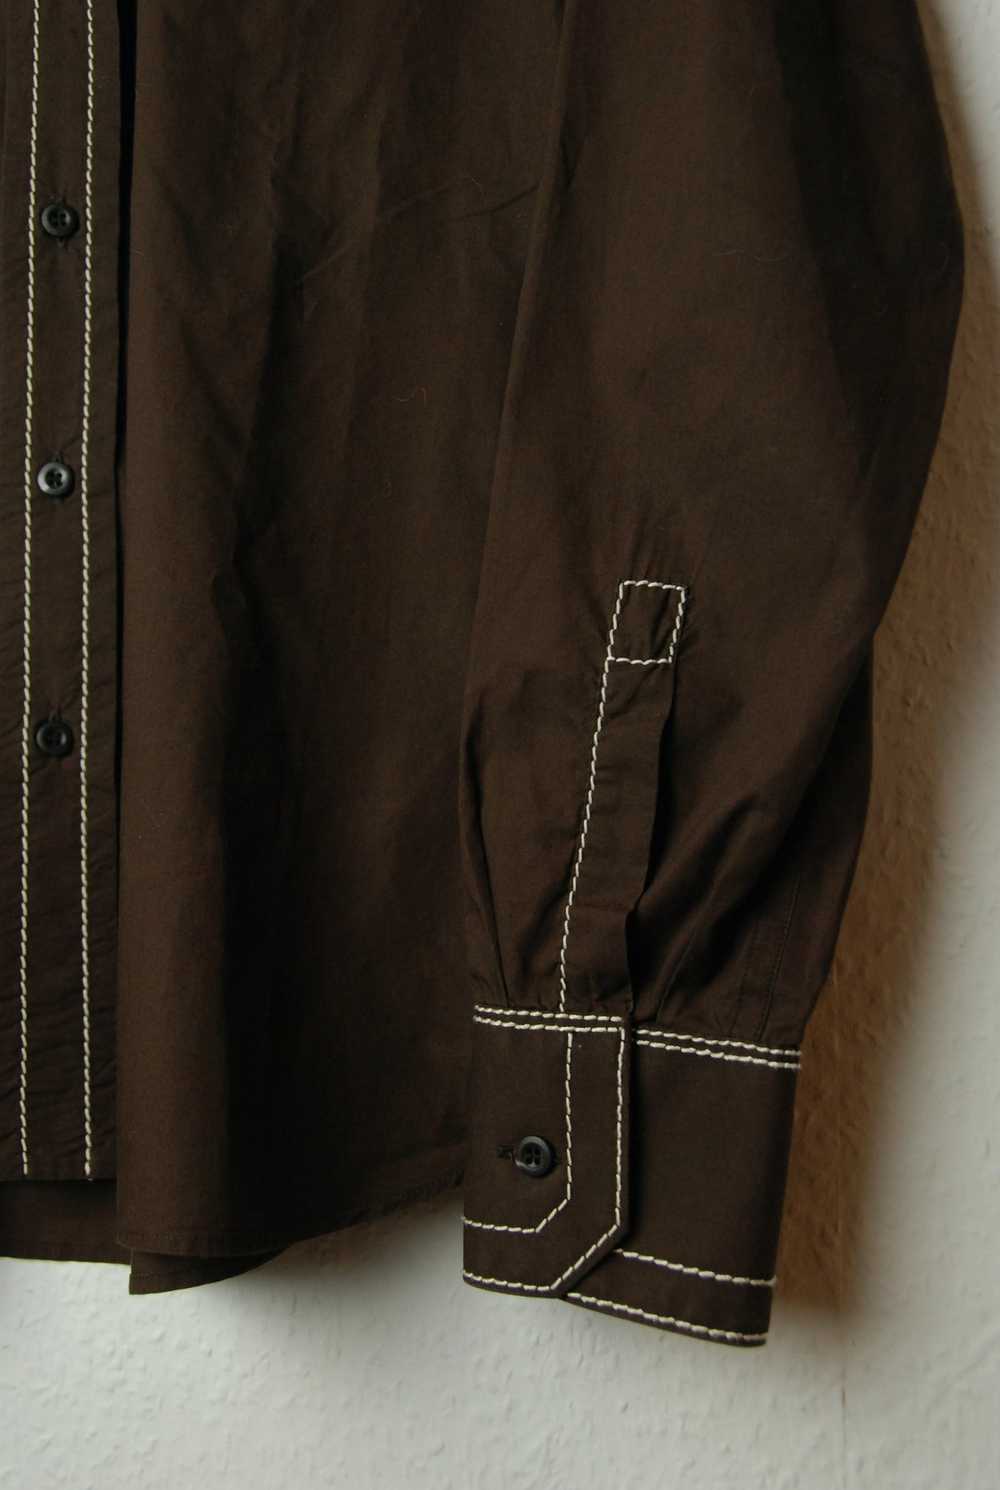 Prada Chocolate brown shirt with white stitches r… - image 6